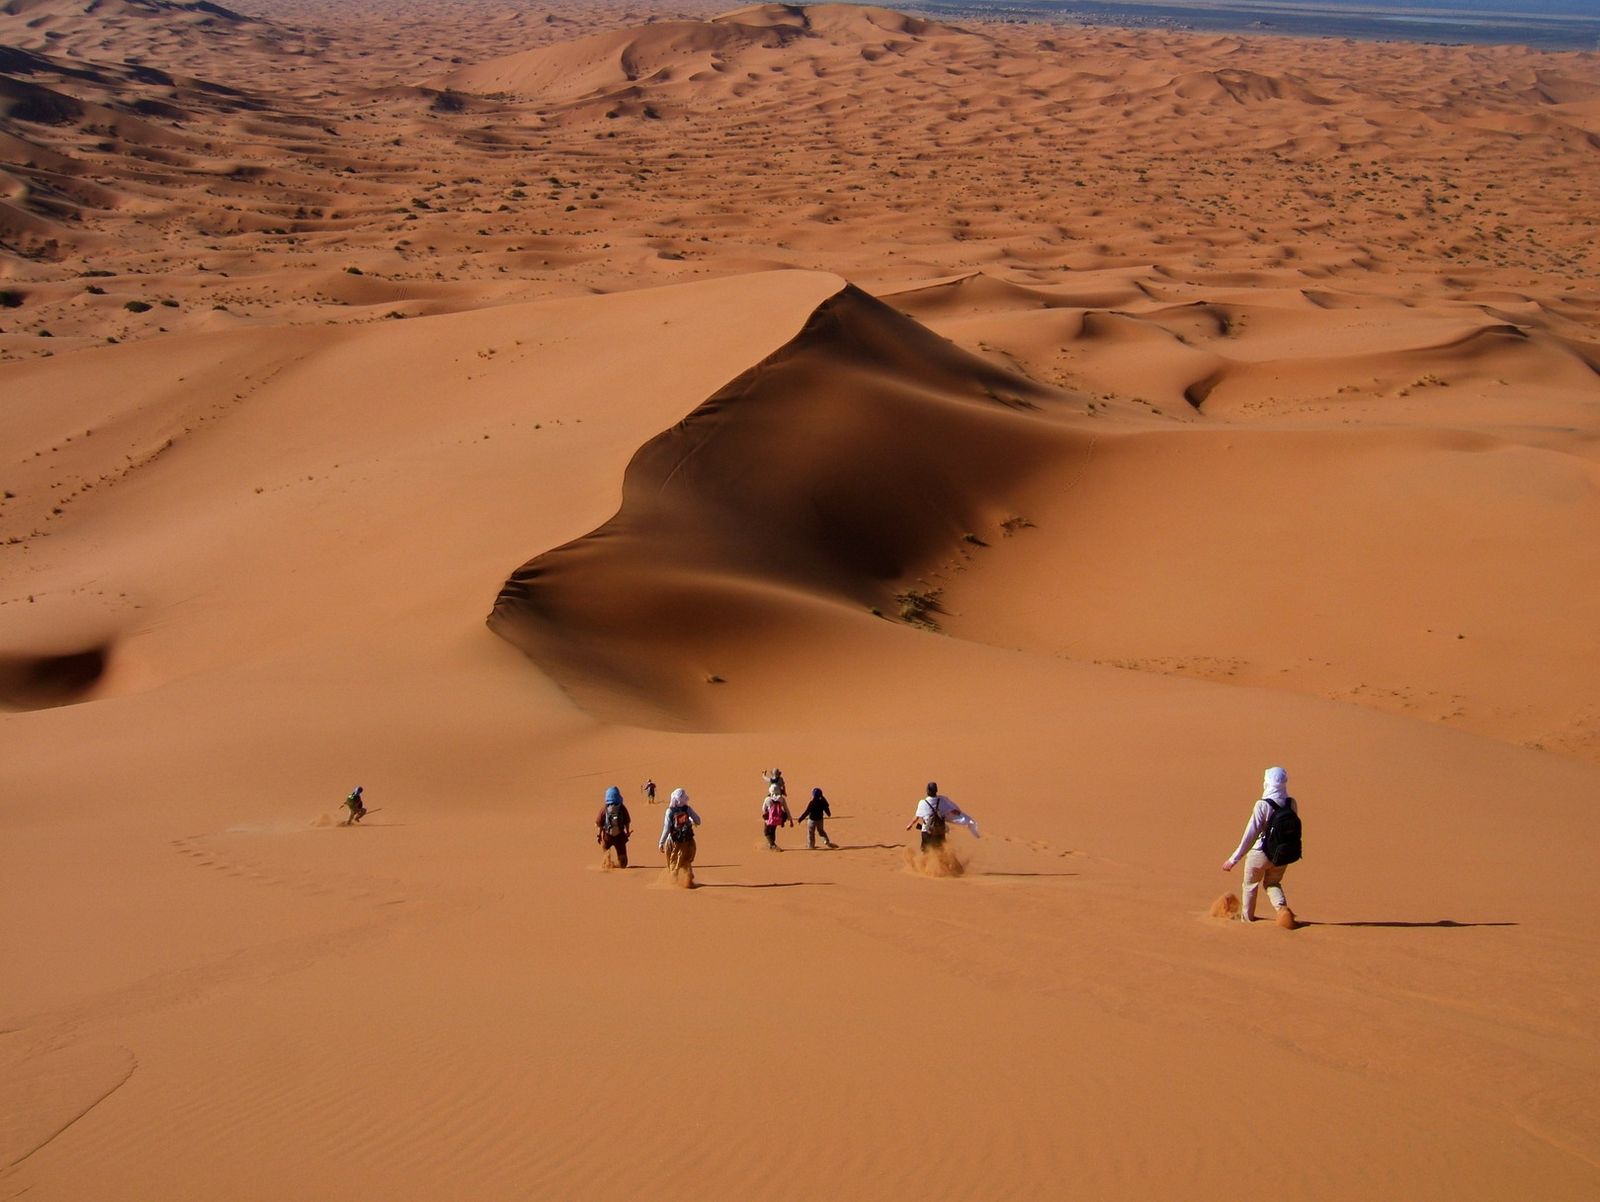 Morocco desert Tour from Marrakech to Merzouga | 3 Days